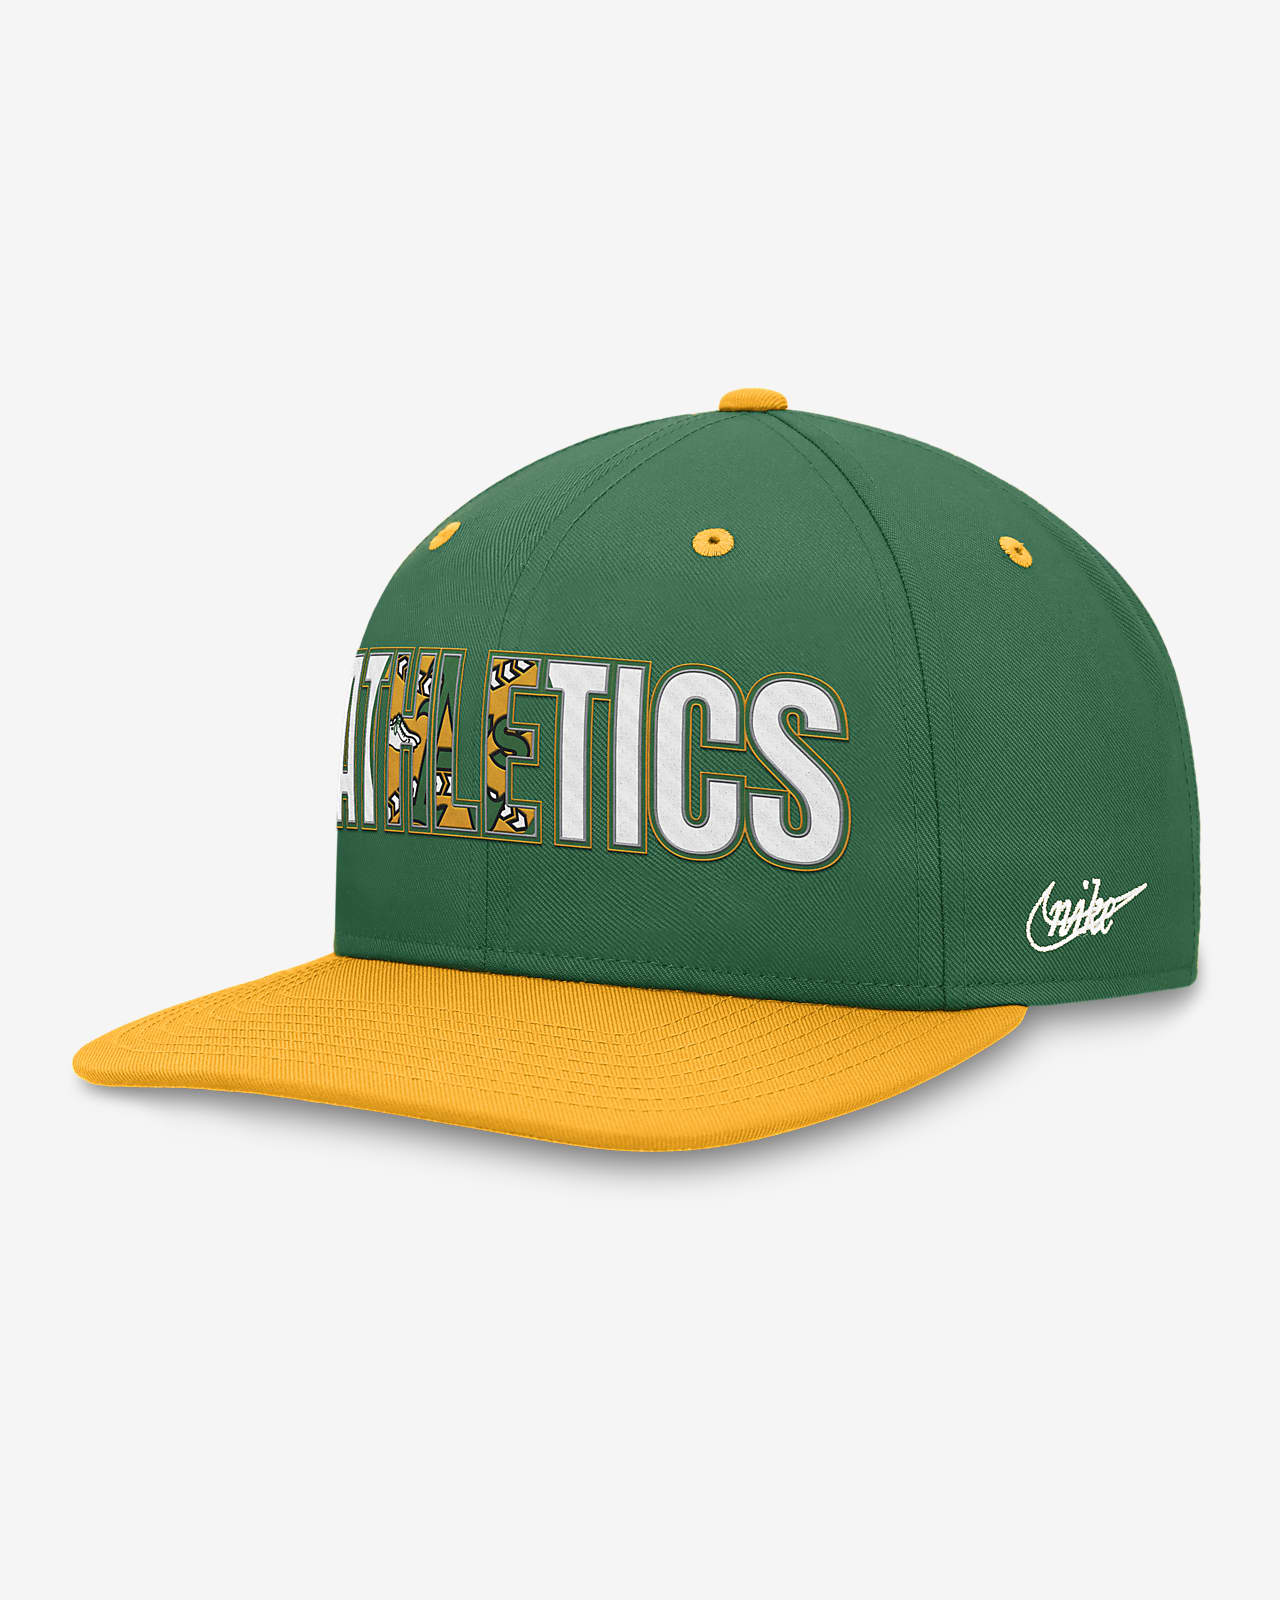 Oakland Athletics Pro Cooperstown Men's Nike MLB Adjustable Hat.